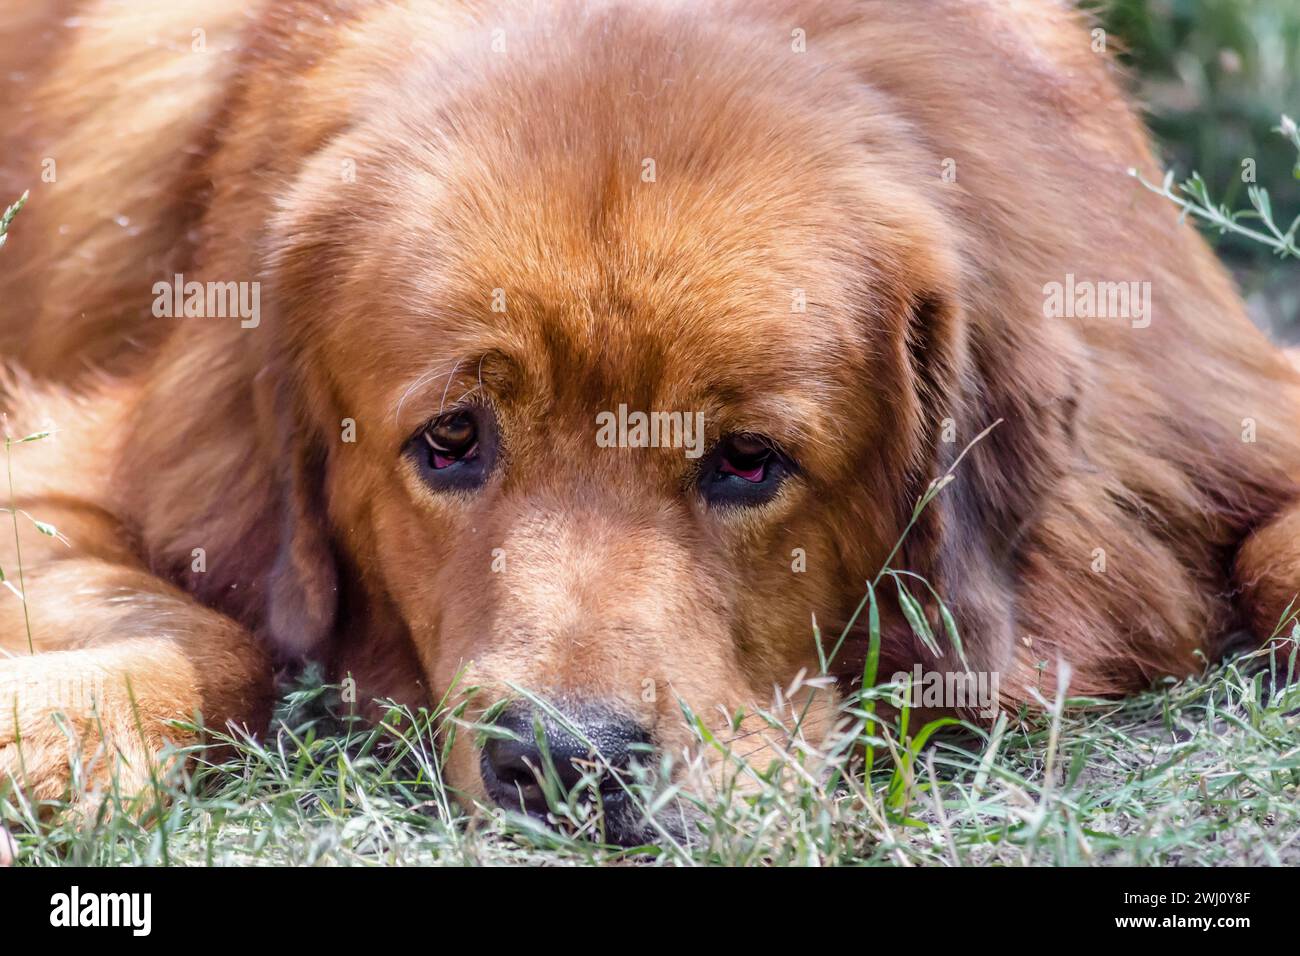 Ravvicinato museruola di Mastiff tibetano di razza di cane rosso Foto Stock